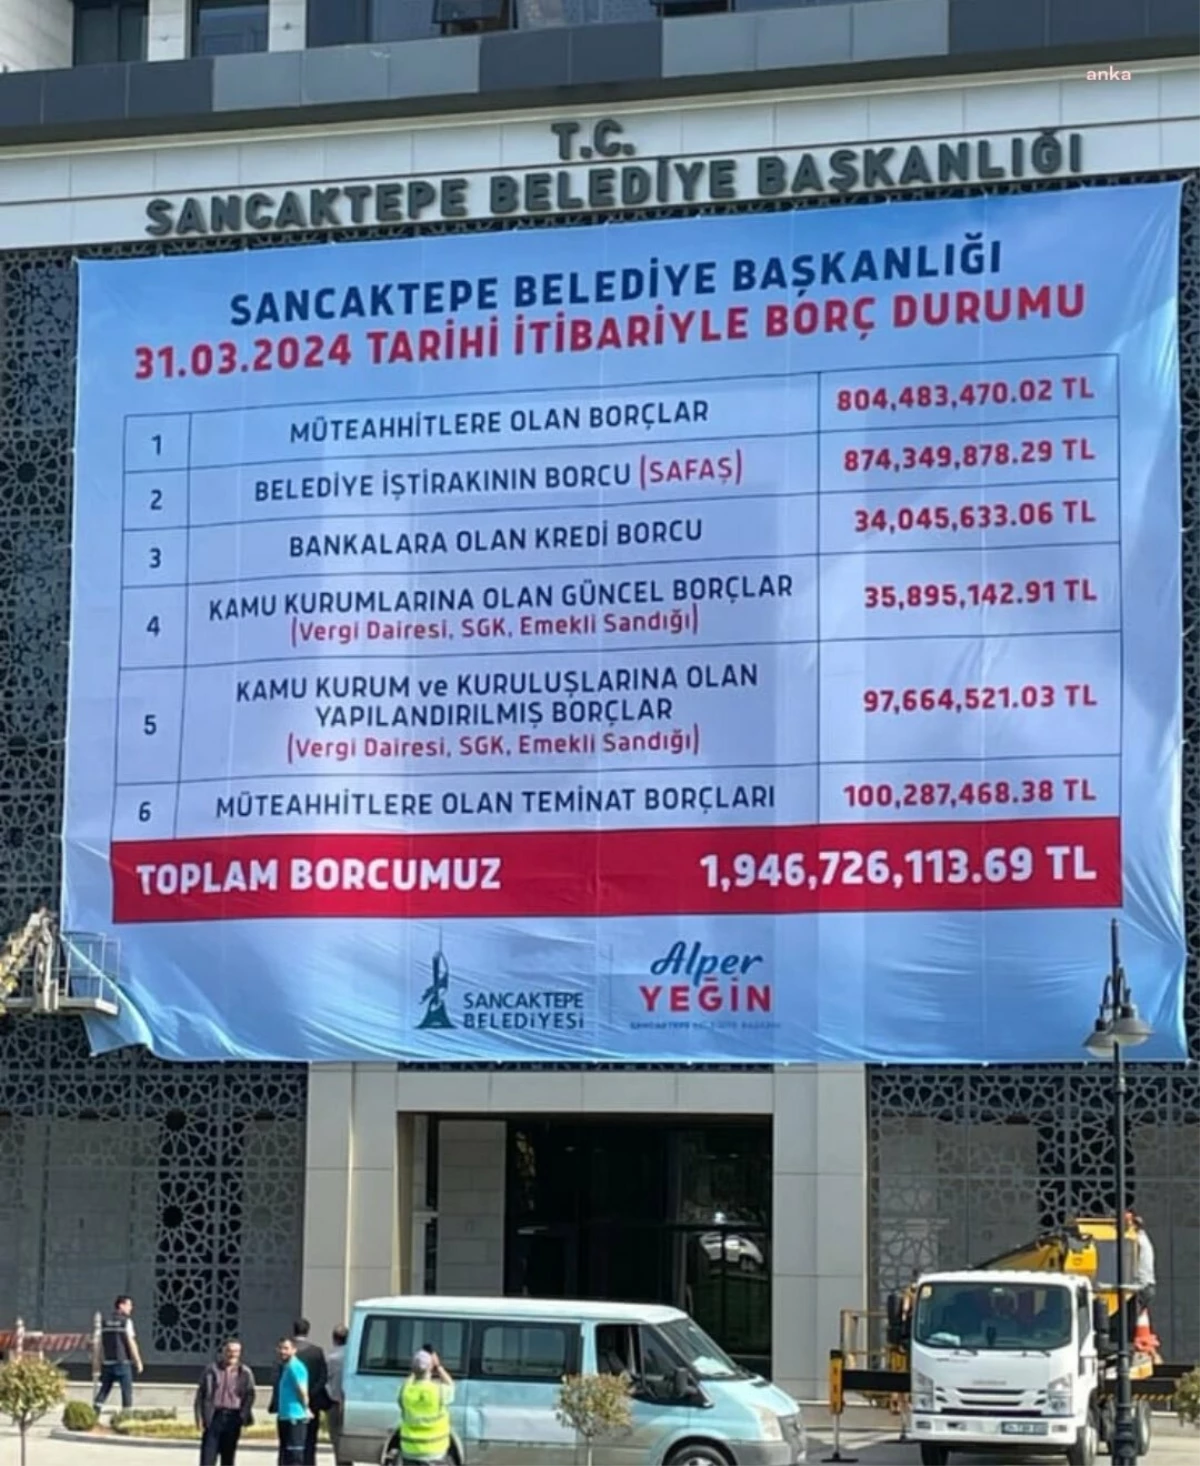 İstanbul Sancaktepe Belediyesi\'nde 2 Milyar TL Borç Asıldı